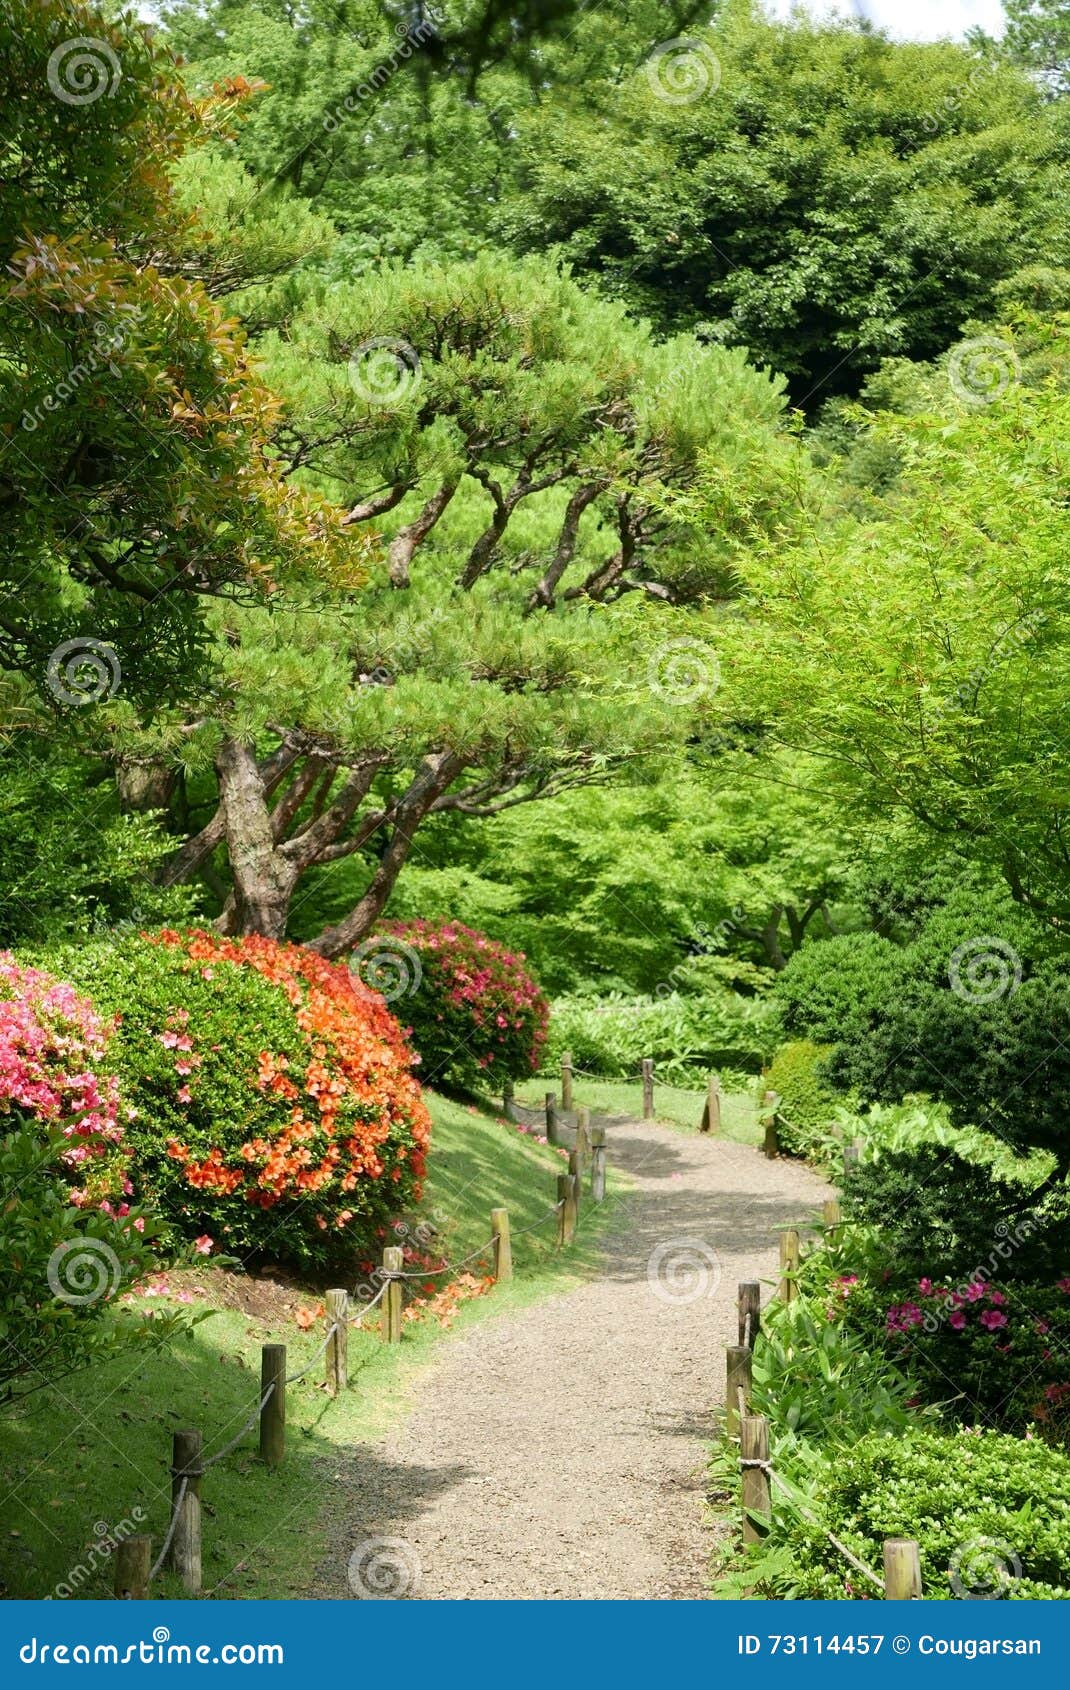 zen garden plants and trees